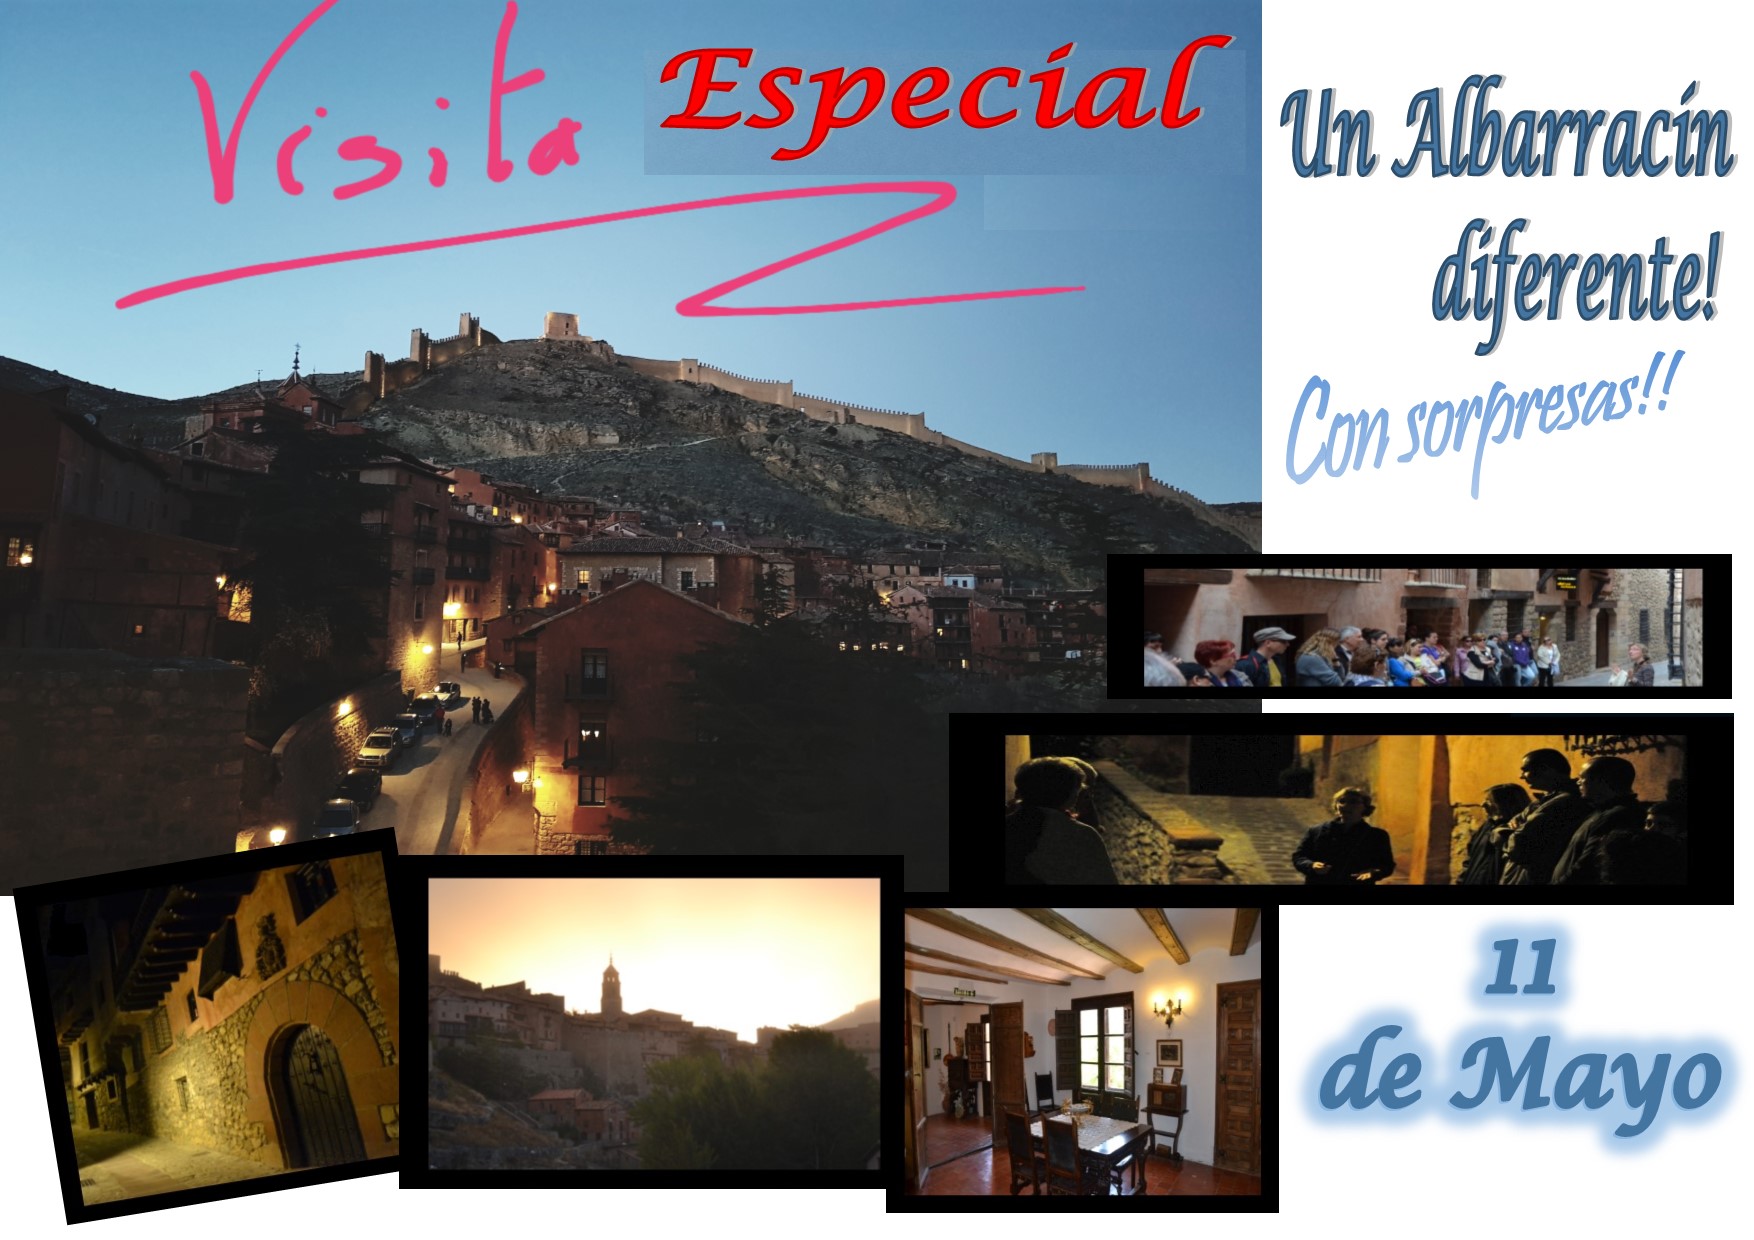 Este Sábado 11 de Mayo por la tarde….Albarracín Especial con sorpresas!!